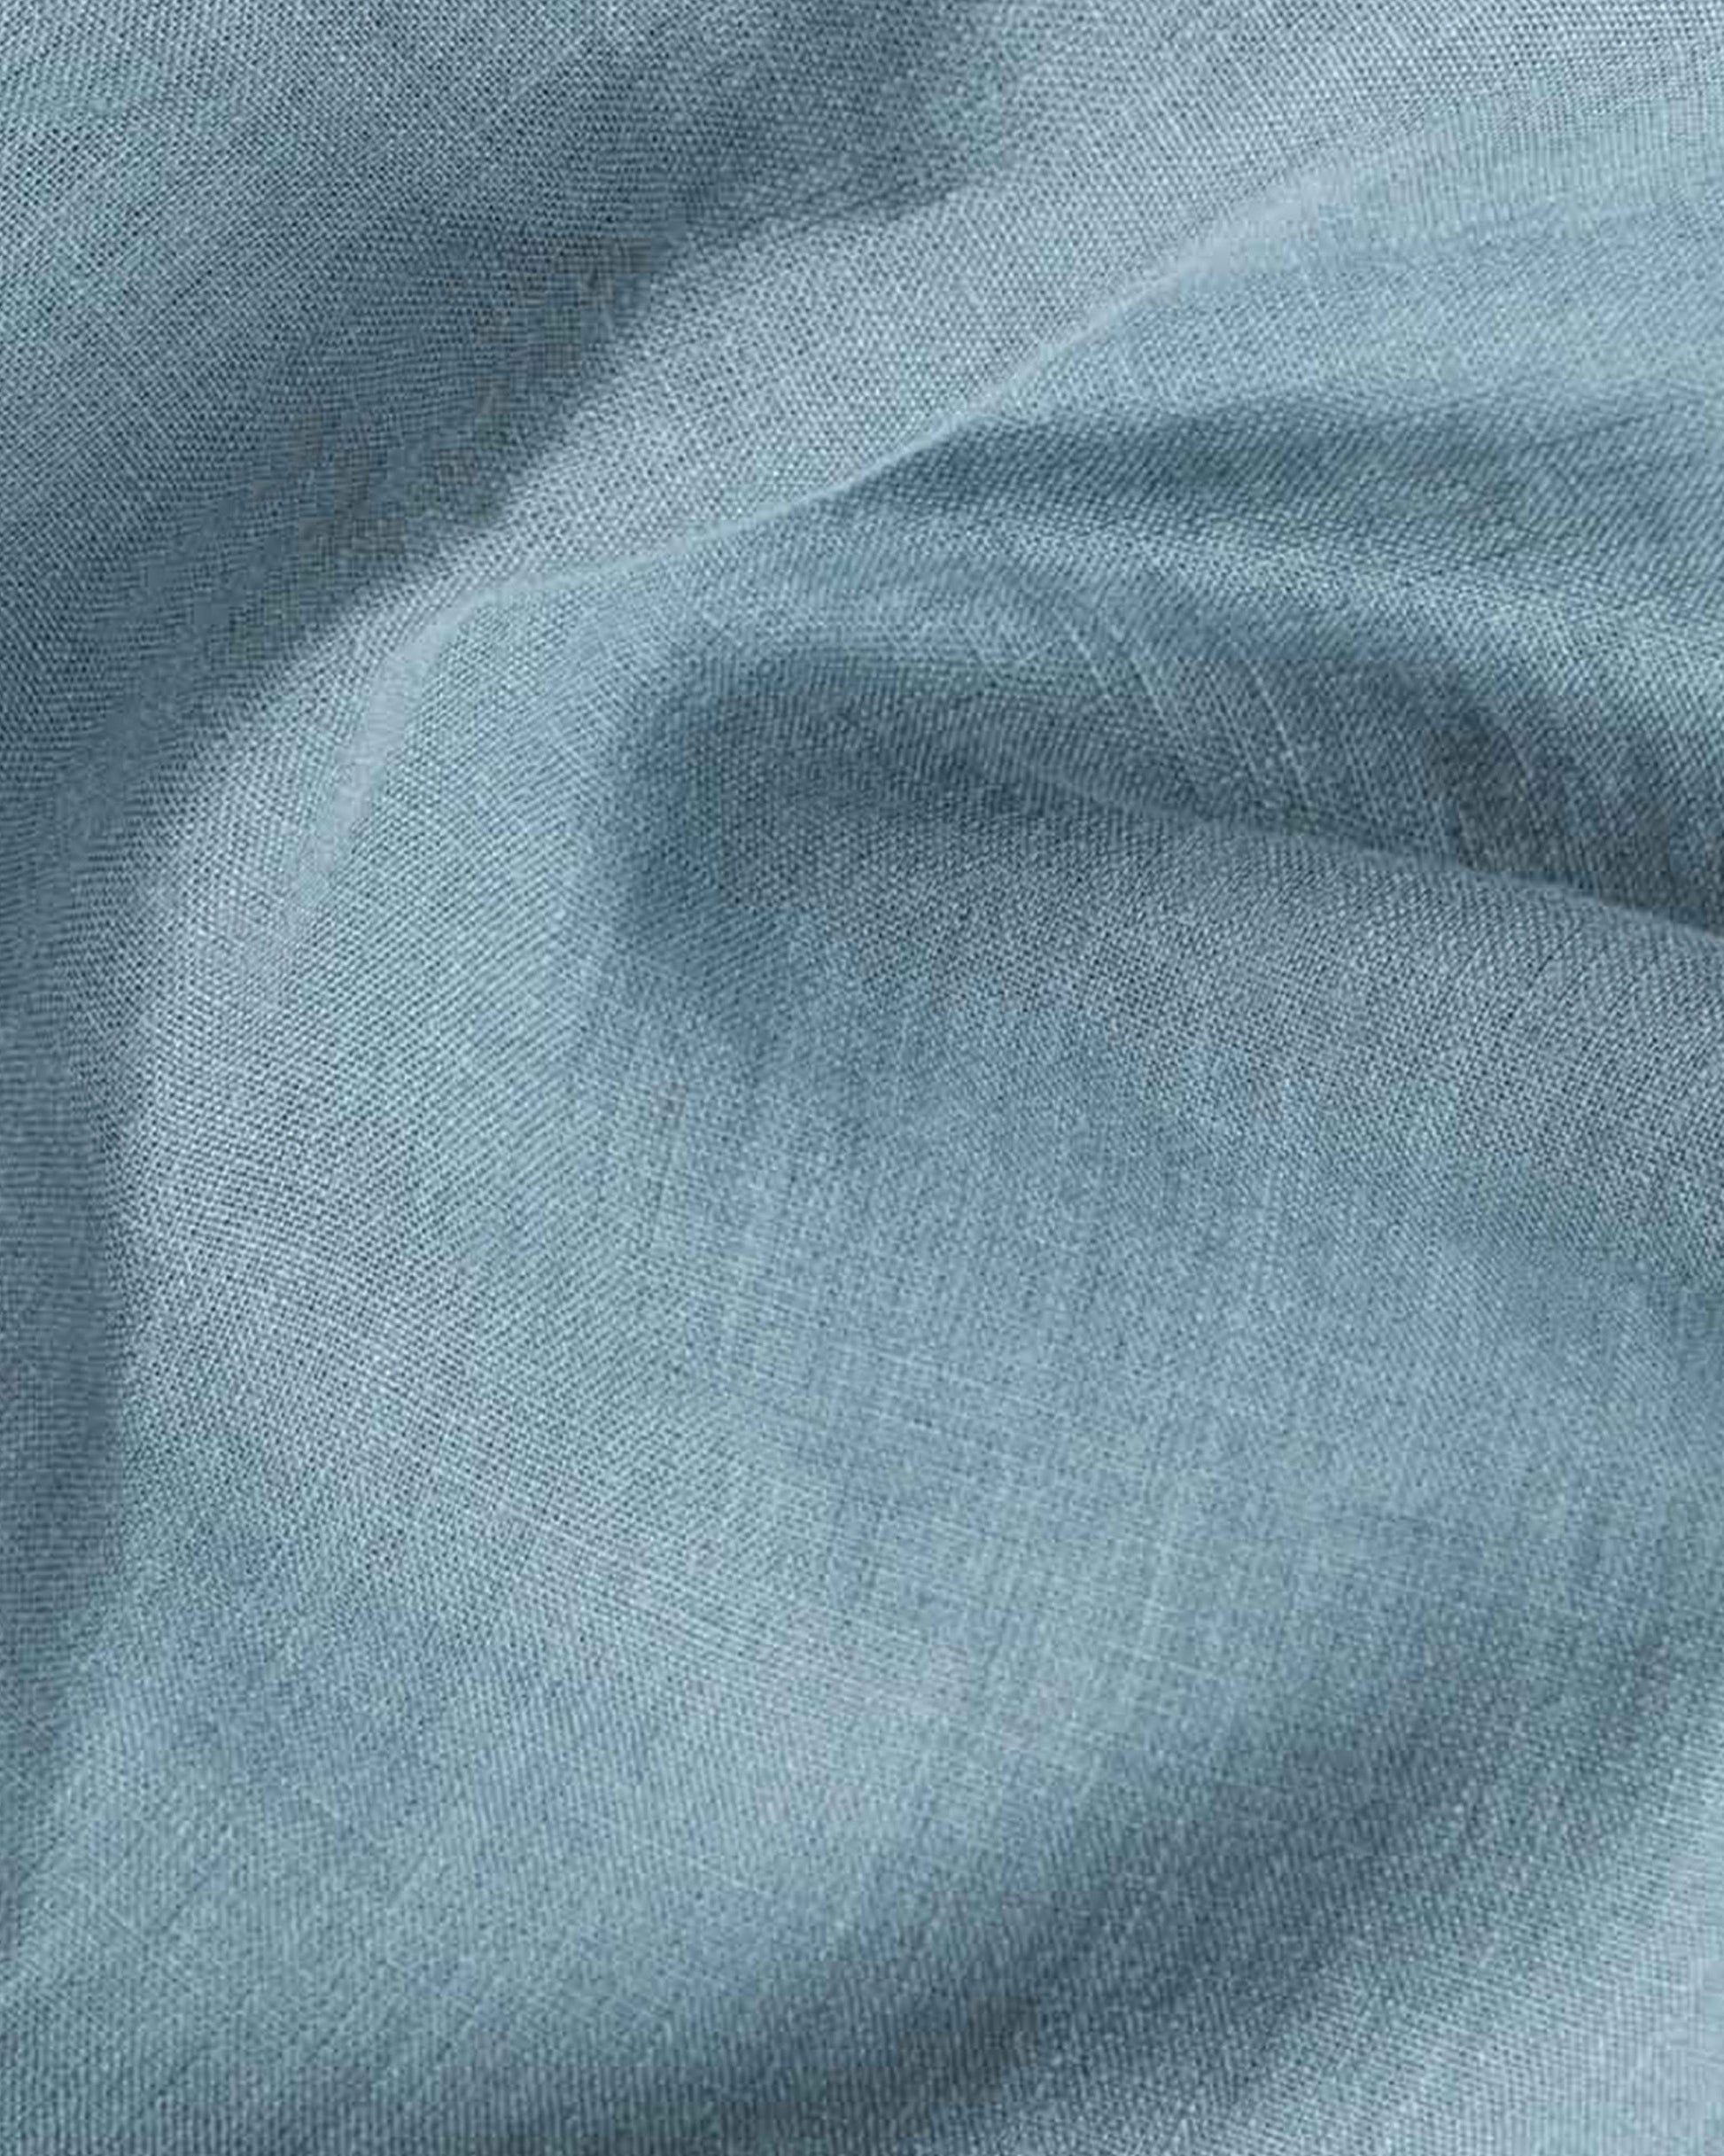 Custom size Gray blue linen fitted sheet - MagicLinen